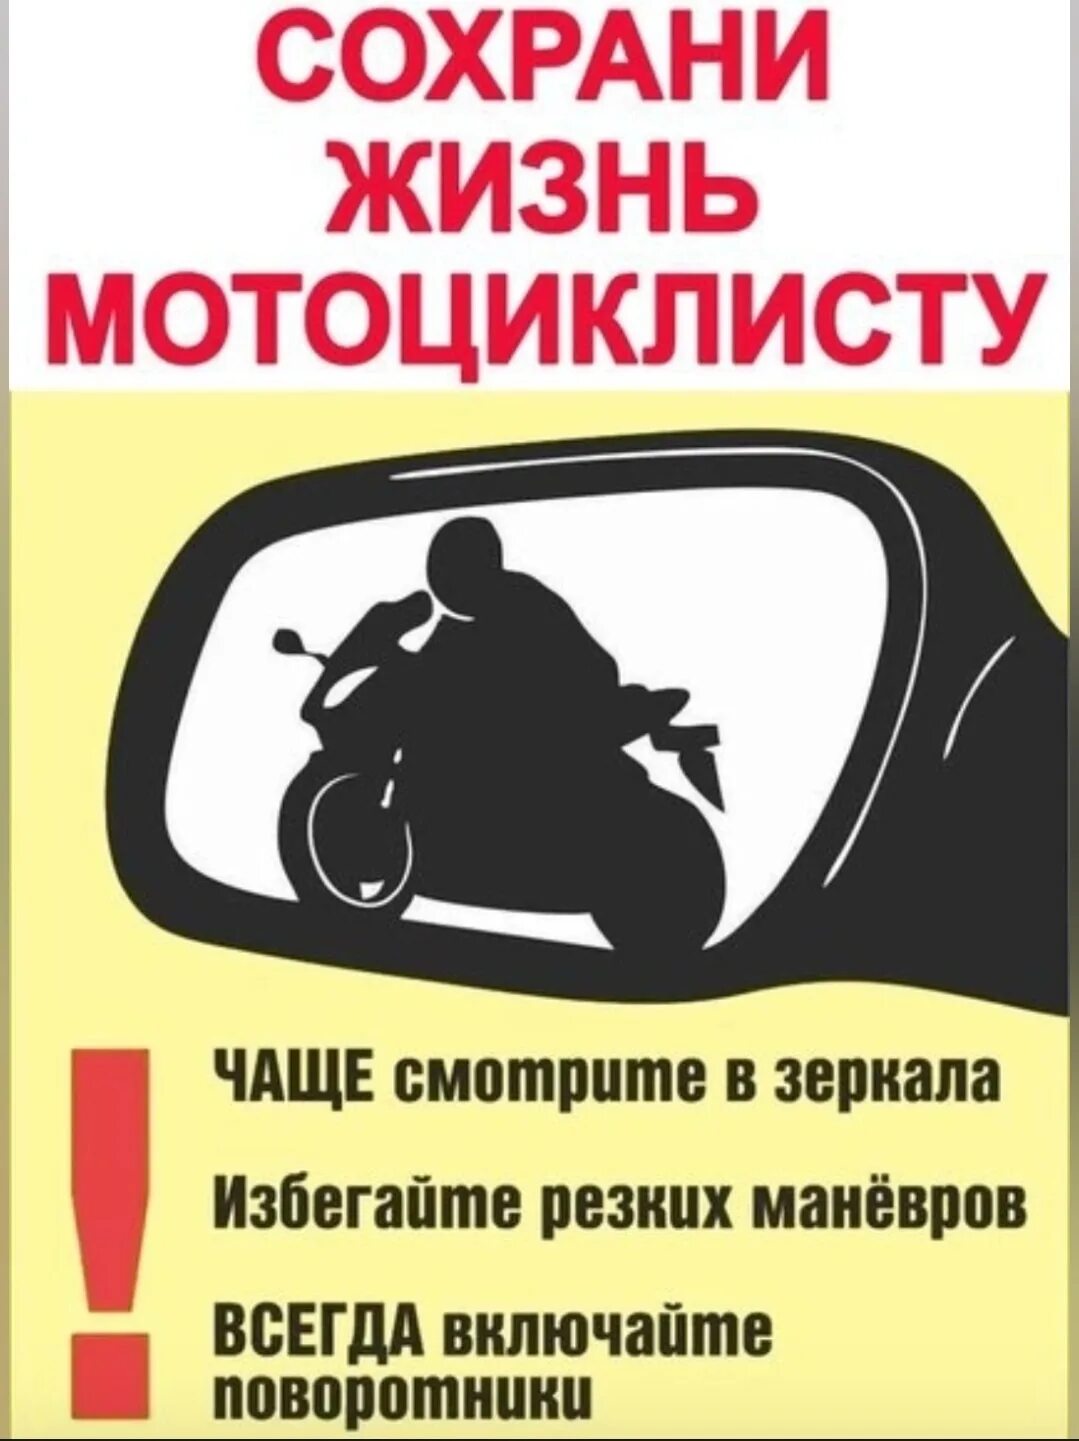 Новые правила мотоциклы. Осторожно мотоцикл. Внимание мотоцикл на дороге. Осторожно мотоциклист. Листовки мотоциклист.